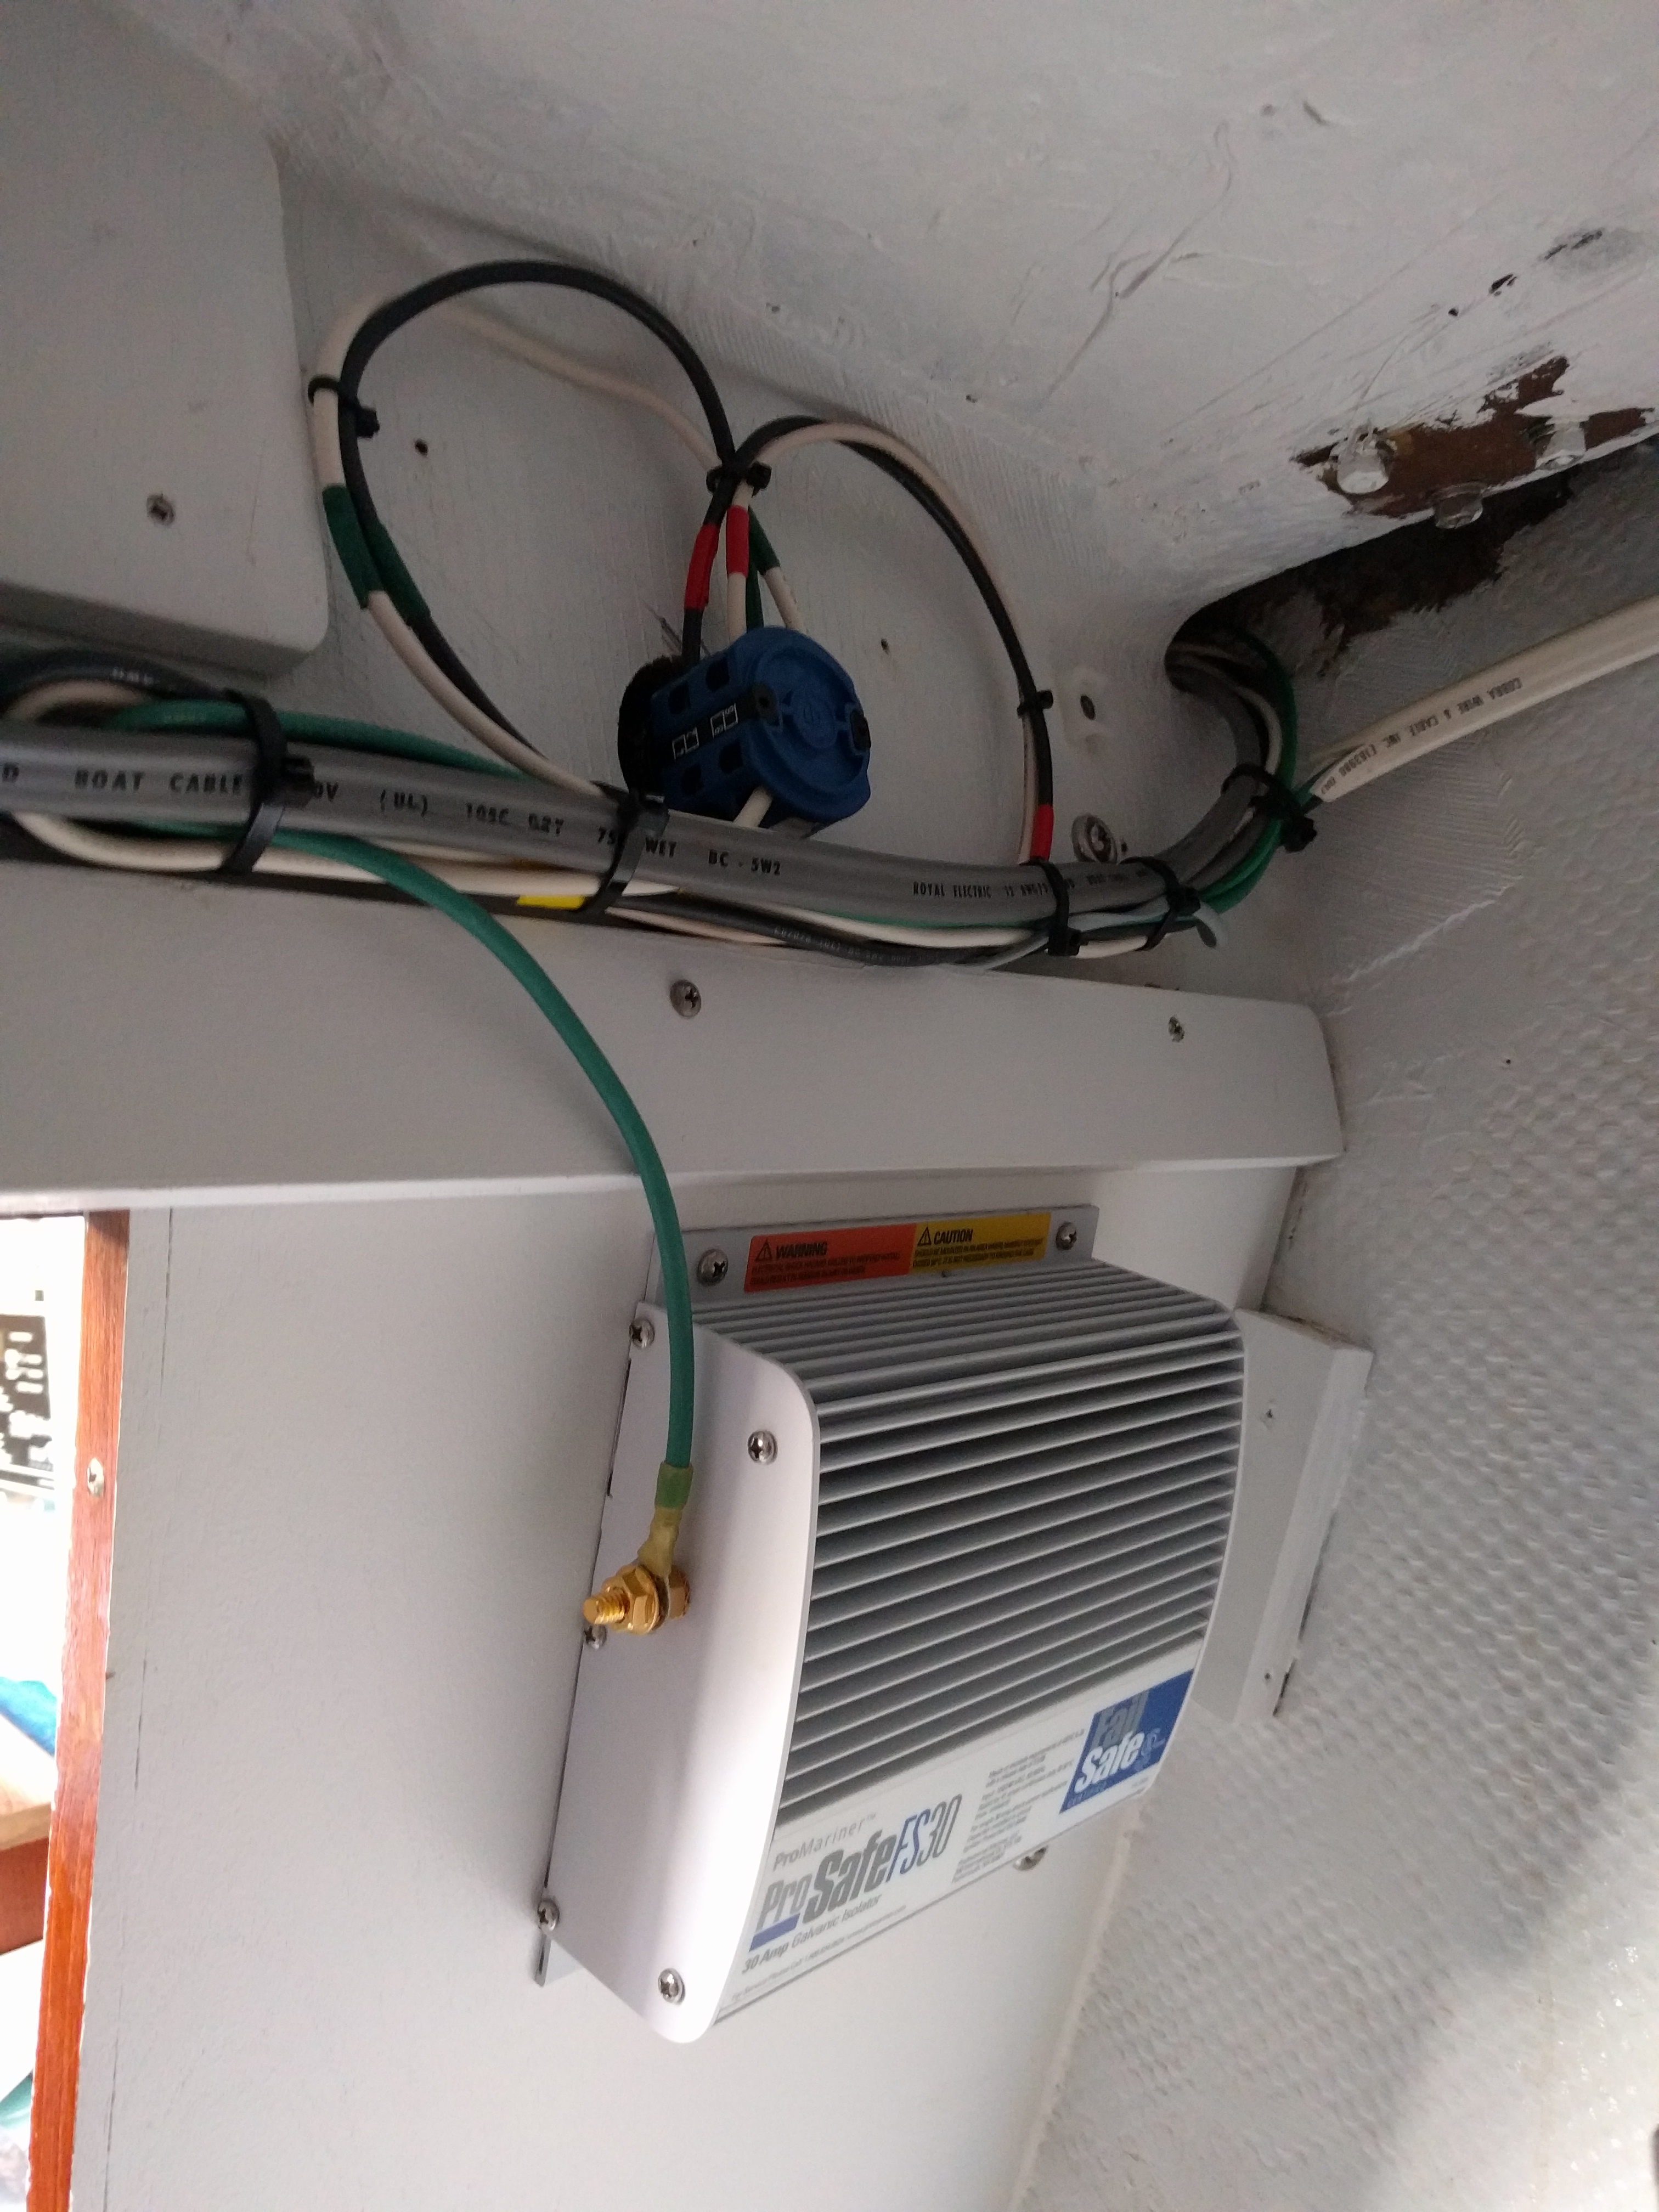 AC rotatory switch and galvanic isolator